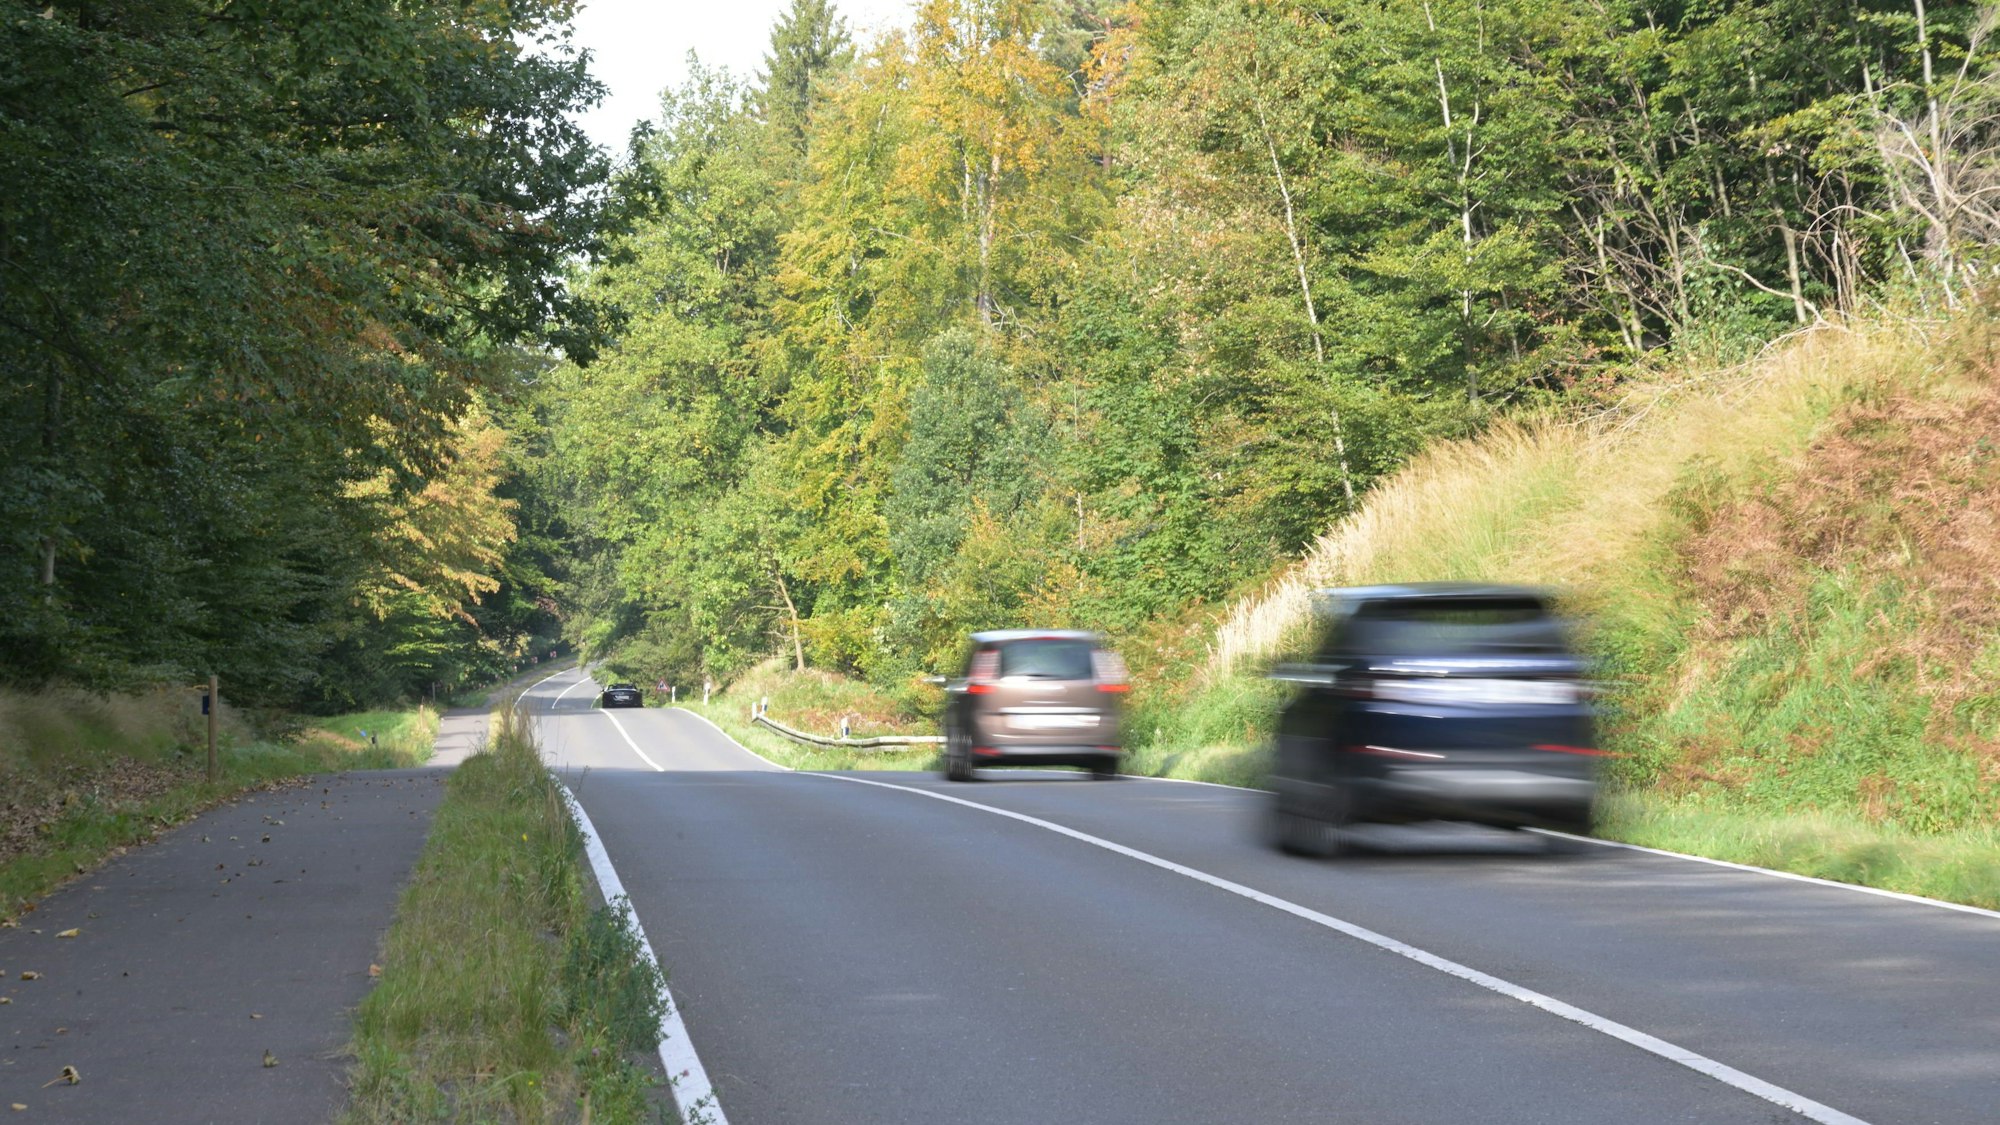 Die Straße zwischen Bensberg und Forsbach solle eine Geschwindigkeitsbegrenzung bekommen, fordert der örtliche Förster.